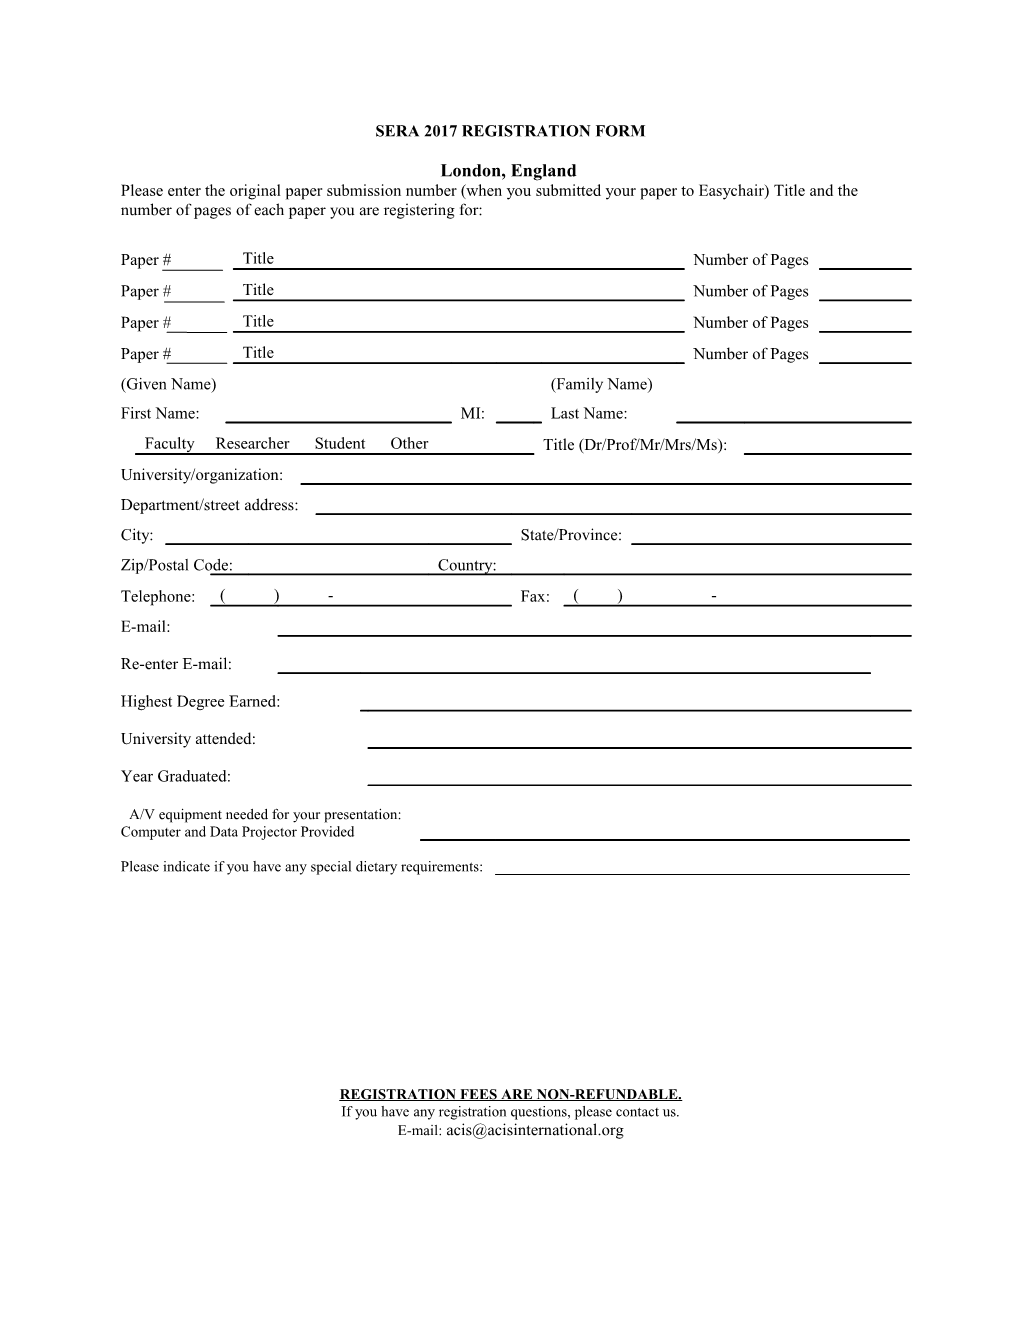 Sera 2008 Registration Form s1